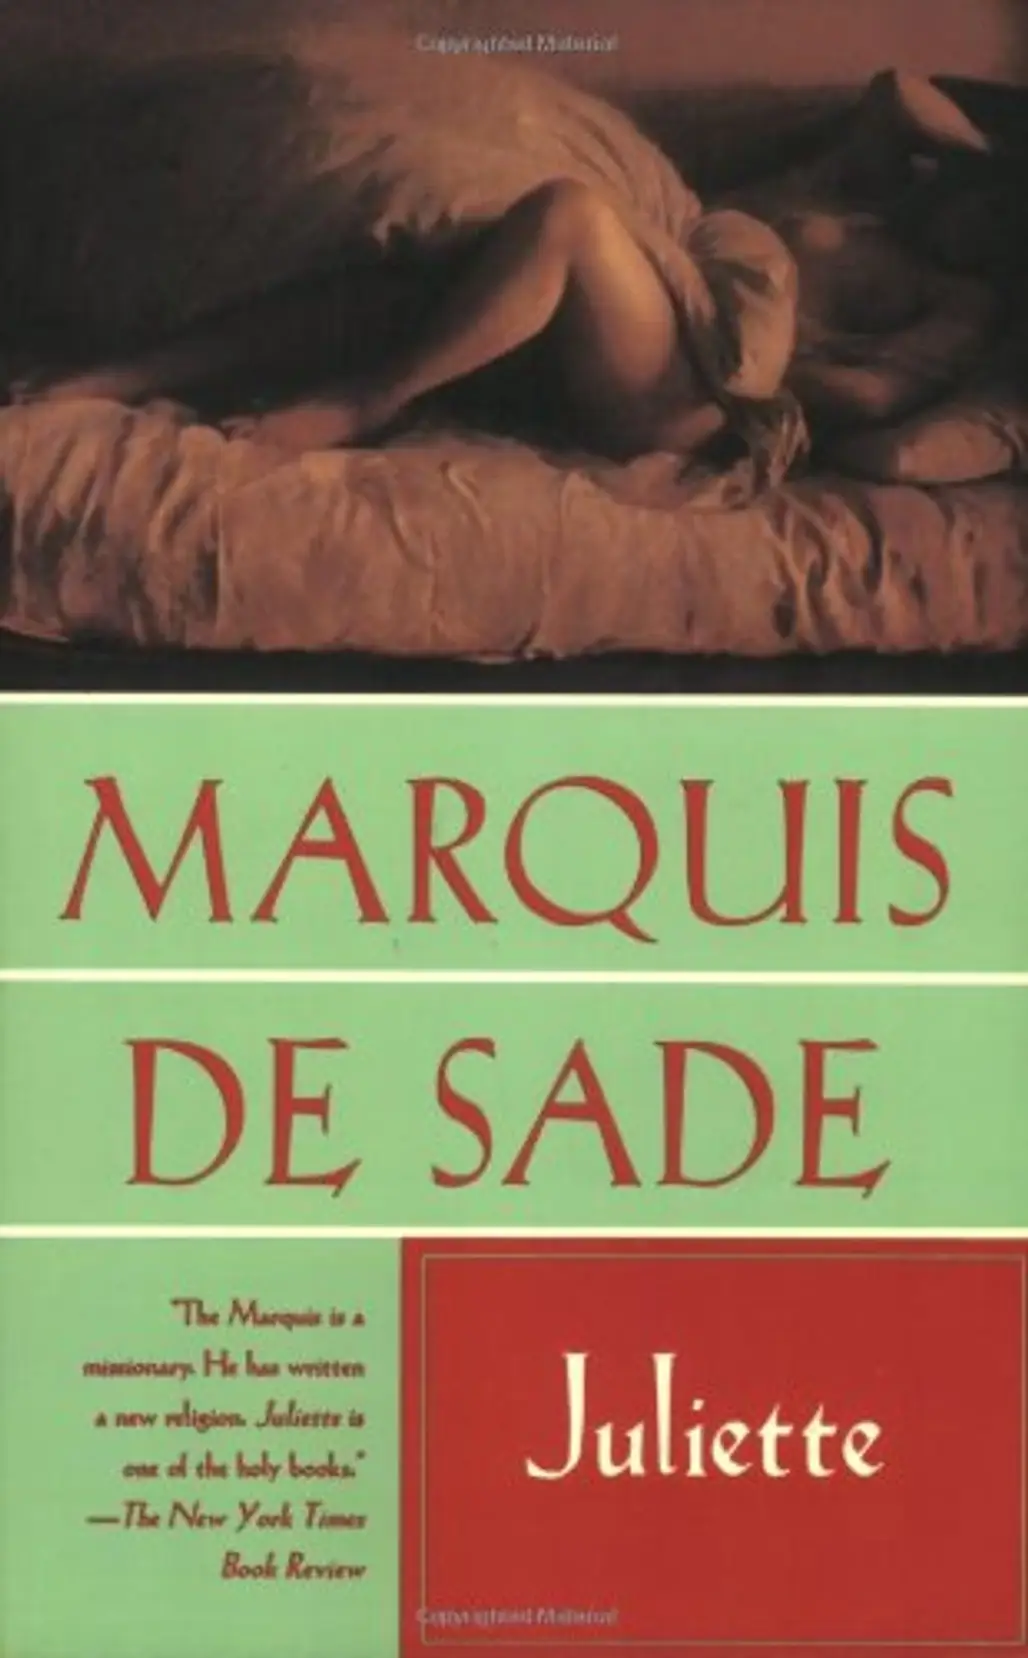 Juliette by Marquis De Sade